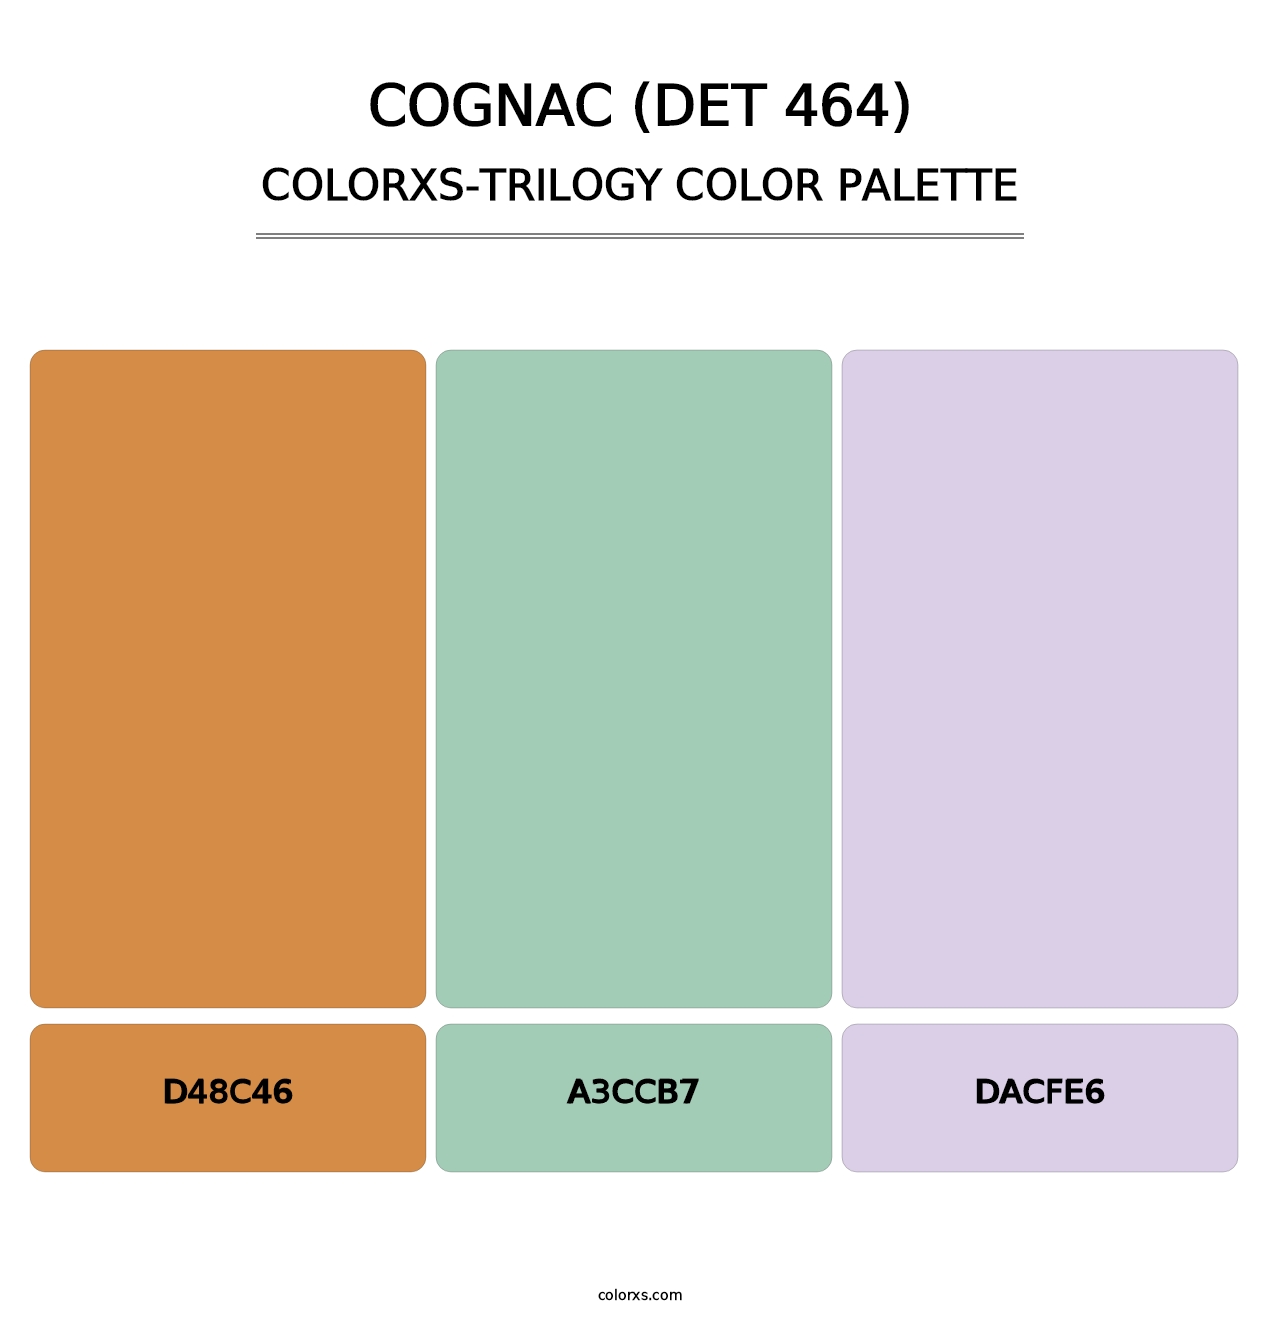 Cognac (DET 464) - Colorxs Trilogy Palette